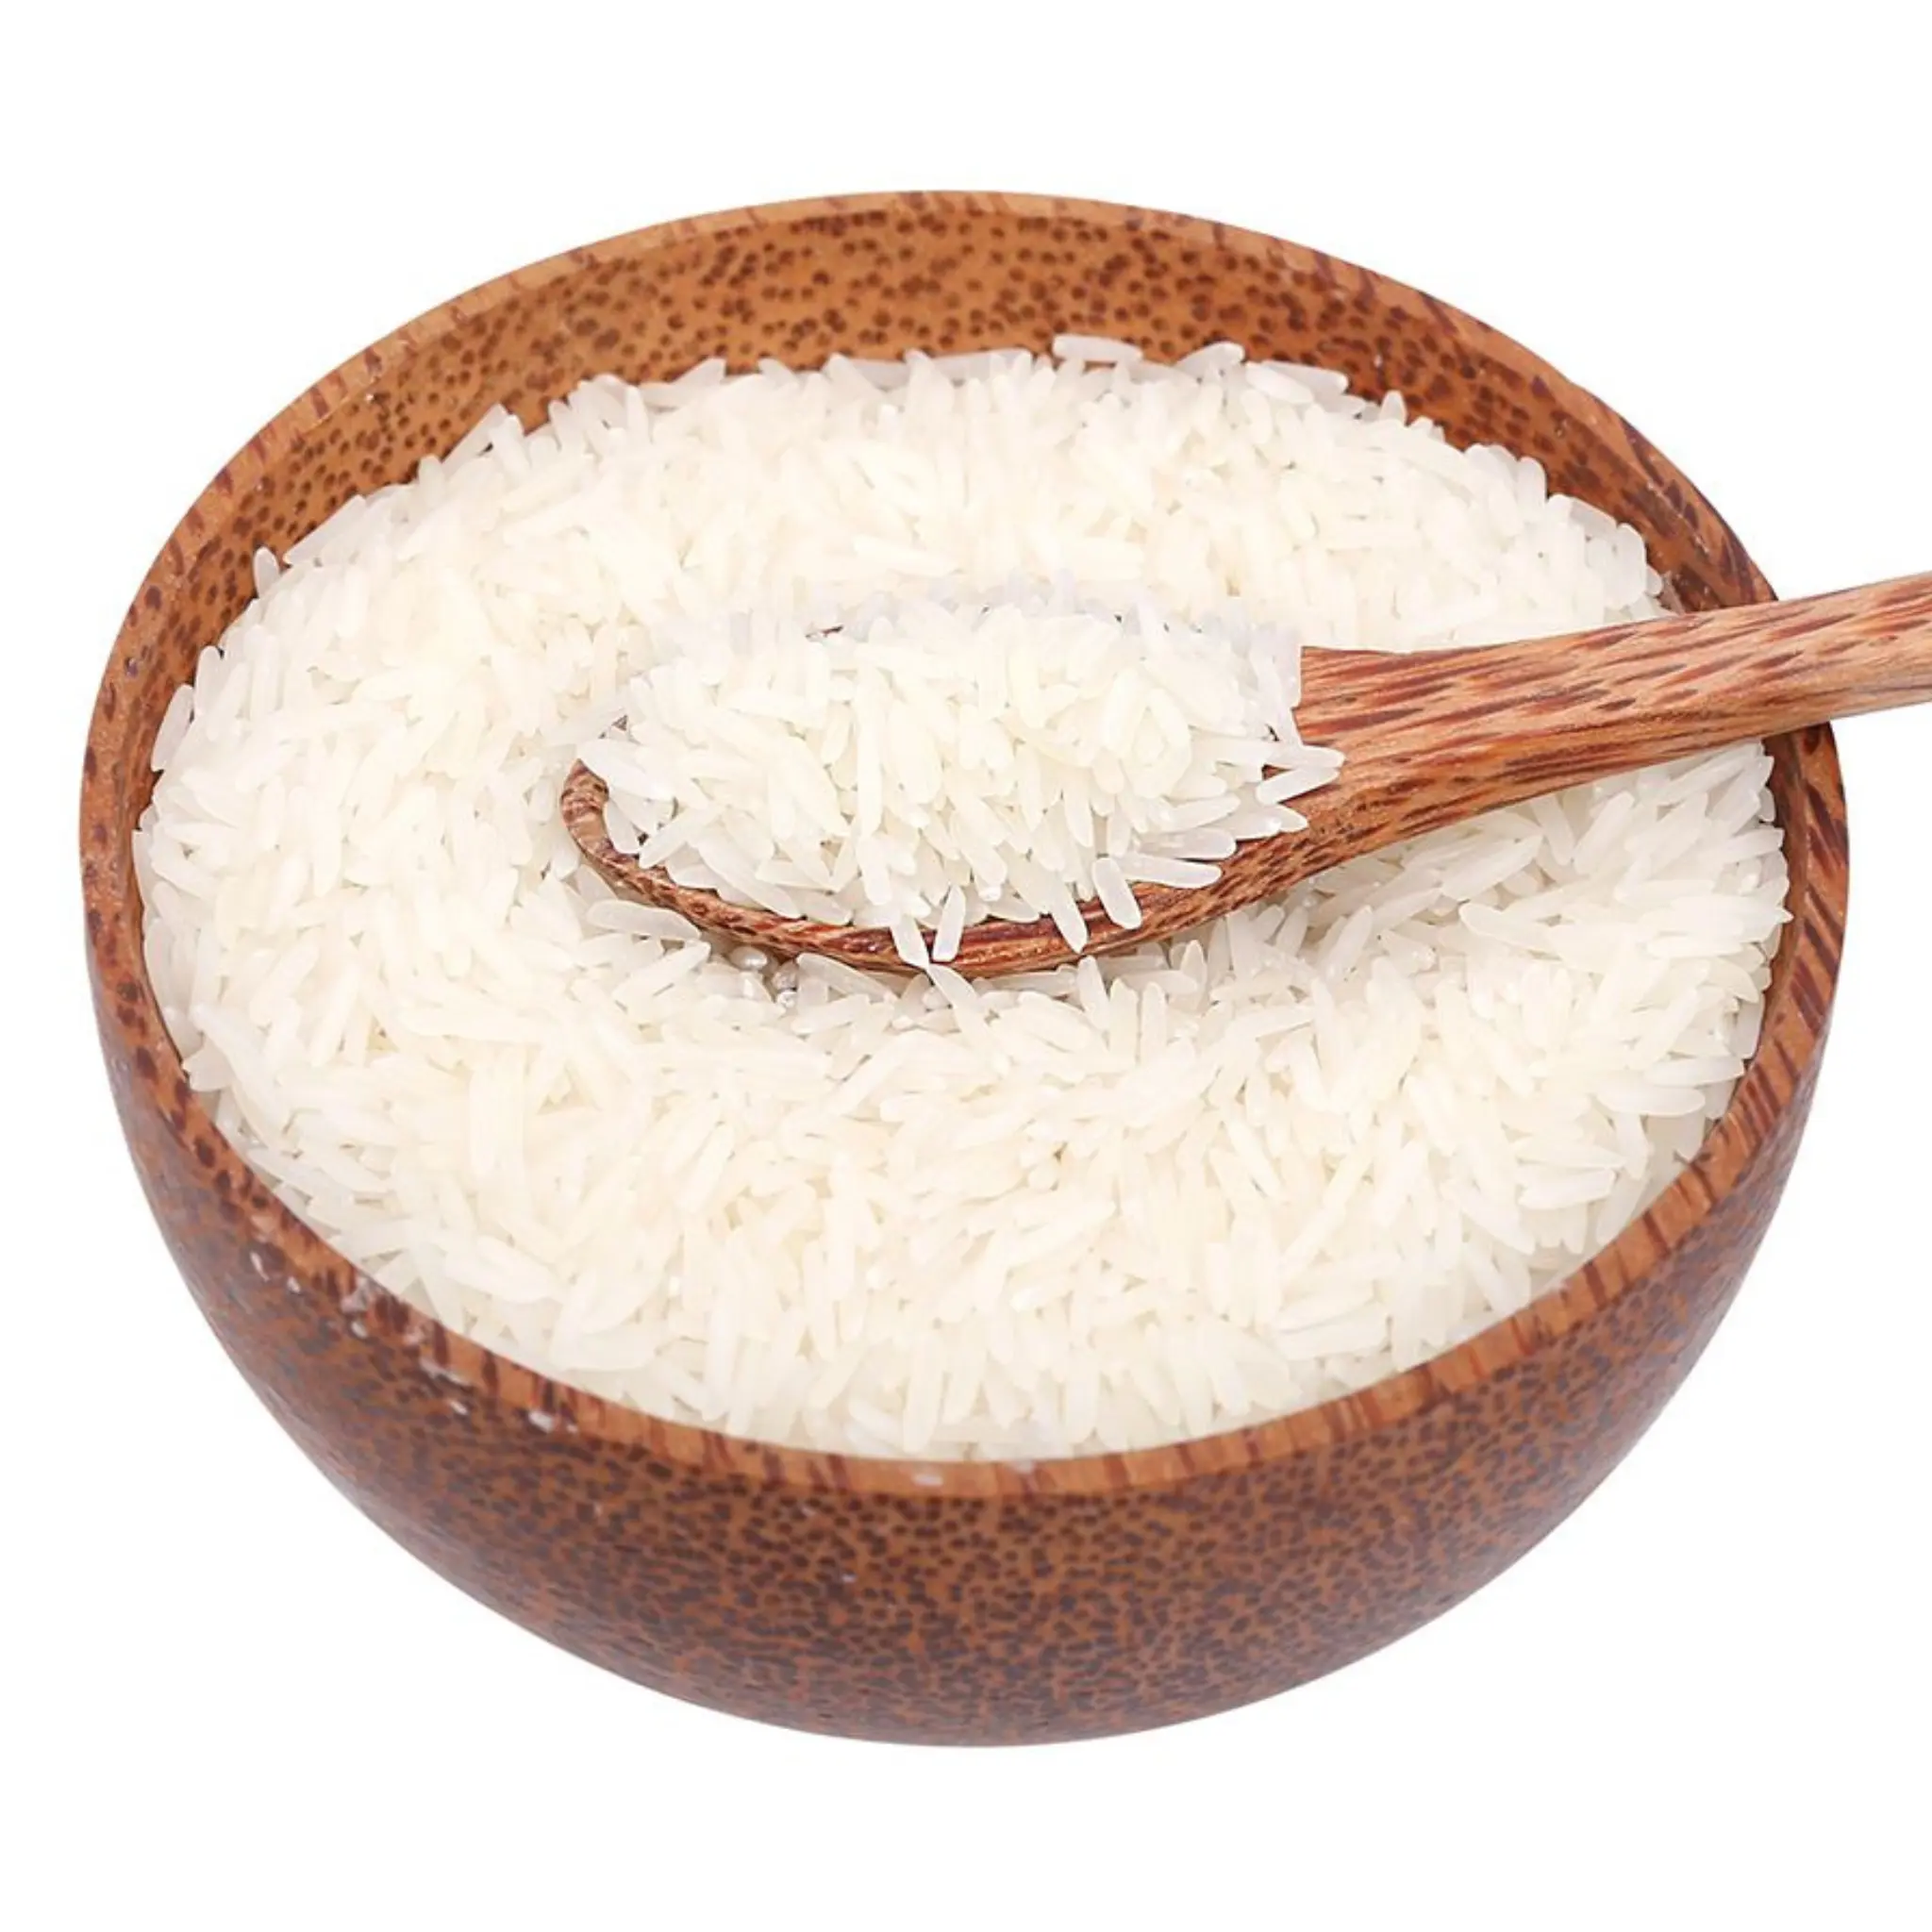 ST24 riso vietnamita a grani lunghi 5% spezzato-qualità PREMIUM/riso della scelta mondiale/-Mr Harry Phan (+ 84) 94 8838498